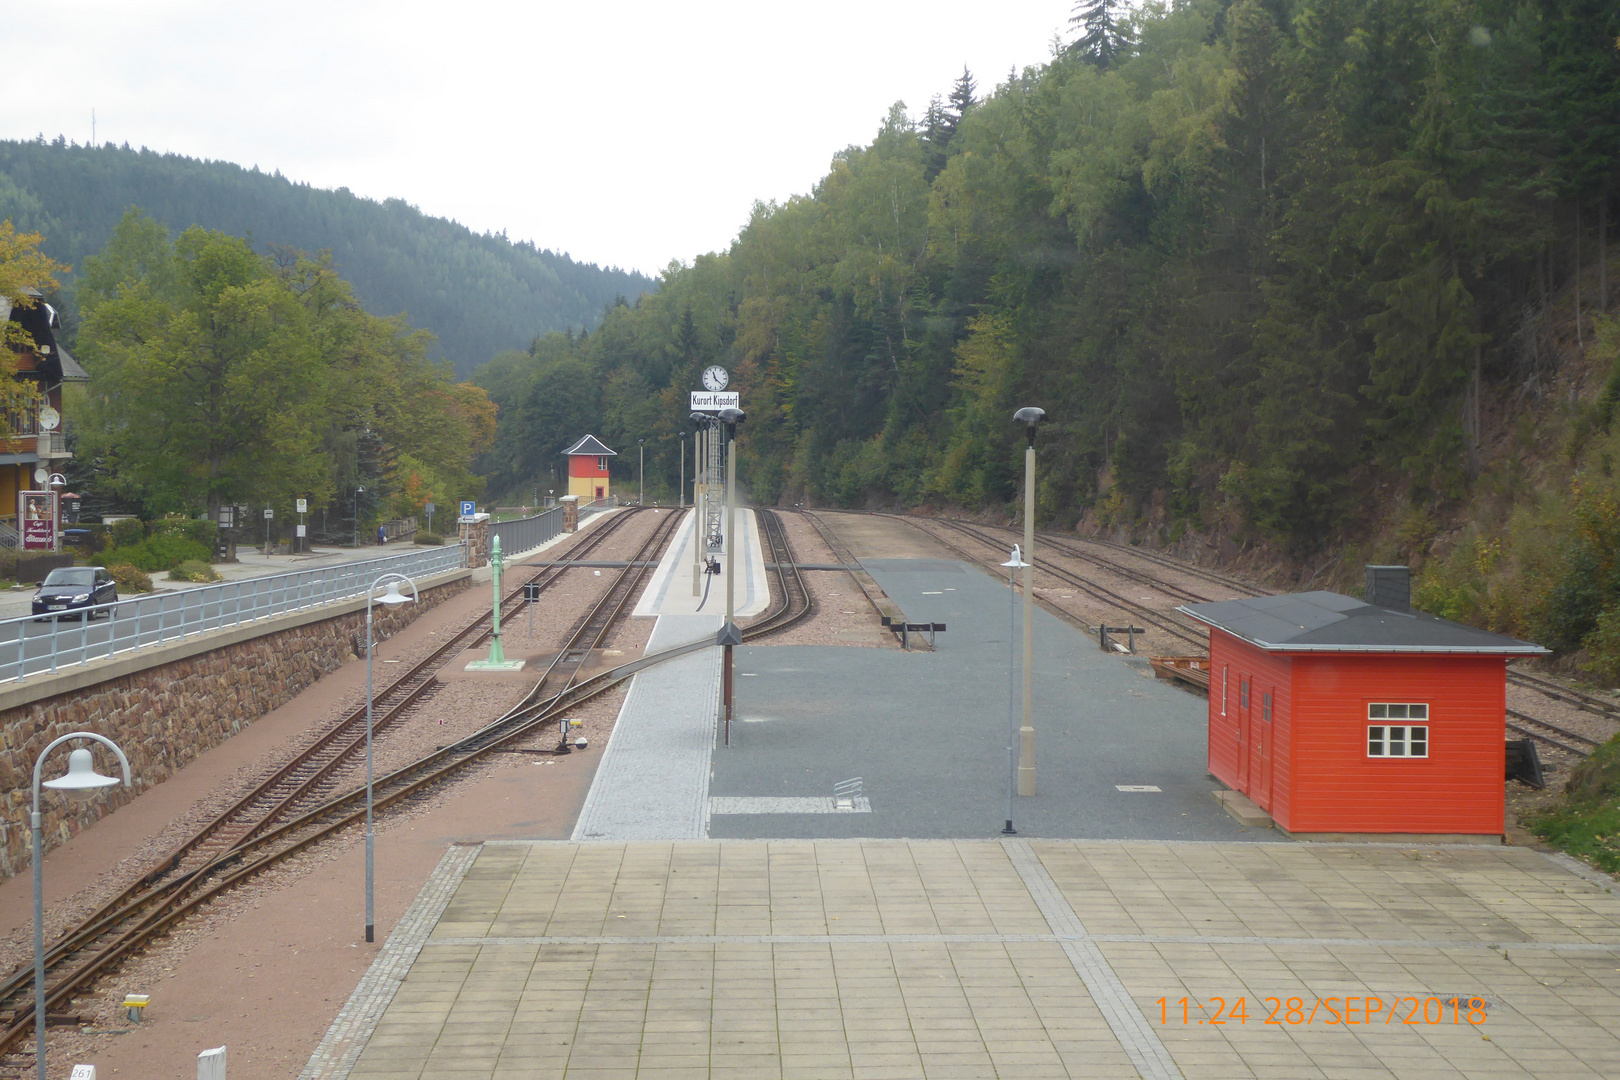 Kurort Kipsdorf-Endstation der Weißeritztalbahn